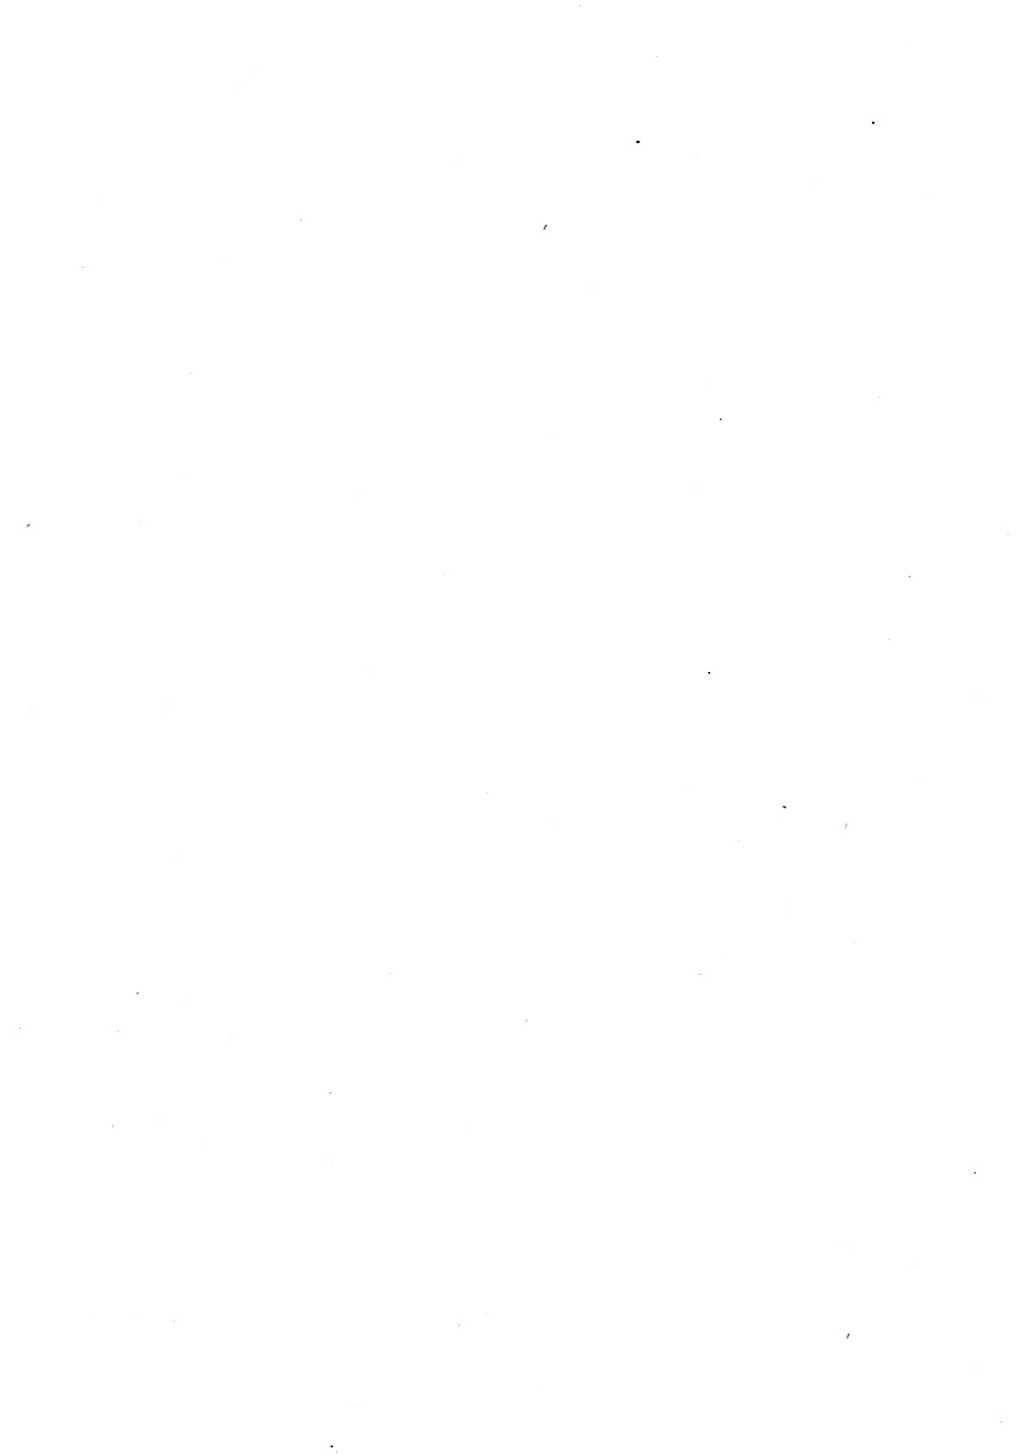 Strafgesetzbuch (StGB) und andere Strafgesetze [Deutsche Demokratische Republik (DDR)] 1957, Seite 186 (StGB Strafges. DDR 1957, S. 186)